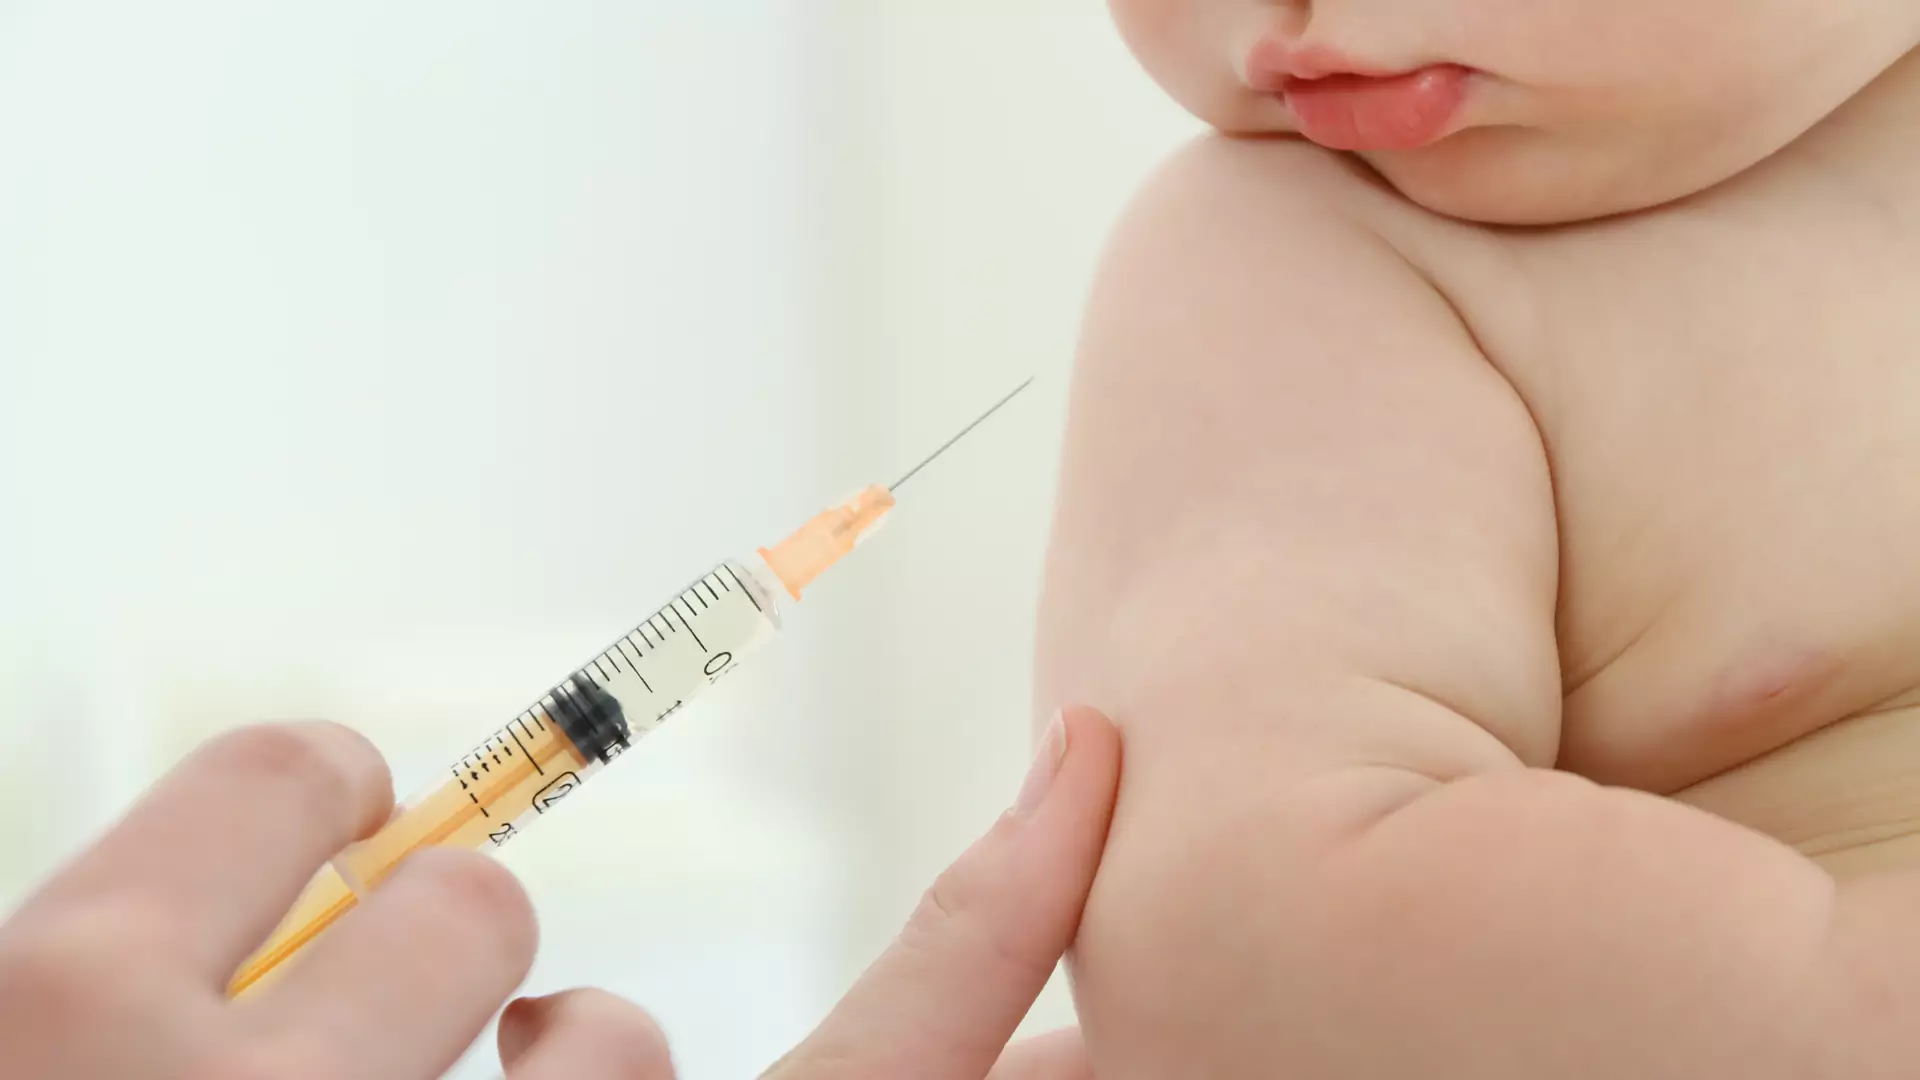 Polacy nie uwierzyli antyszczepionkowcom - 87% jest za obowiązkiem szczepień